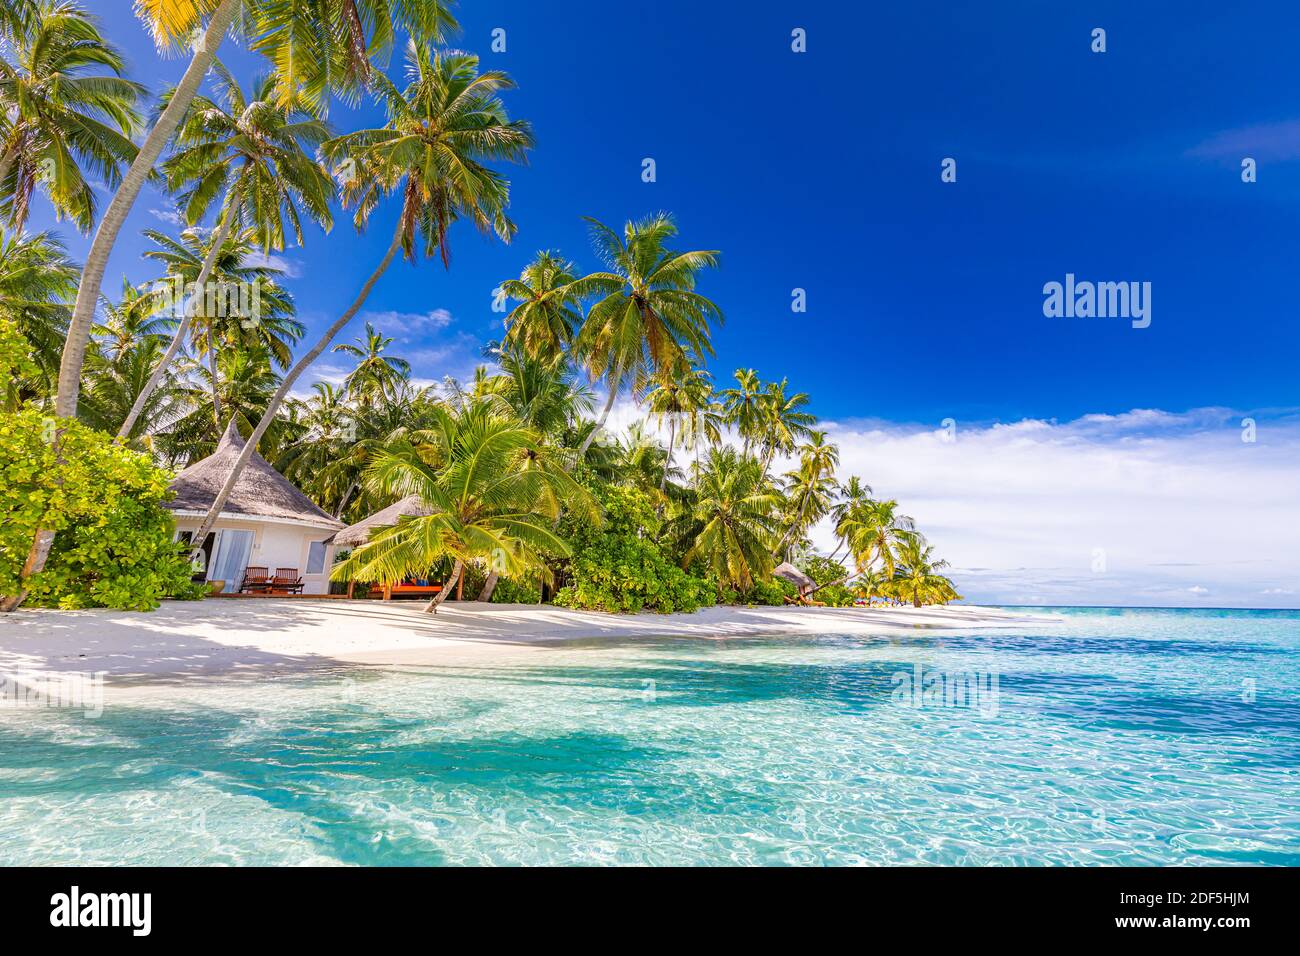 Superbe plage naturelle avec palmiers et ciel nuageux. Vacances d'été voyage vacances concept de fond. Maldives plage paradisiaque. Voyage de luxe en été Banque D'Images